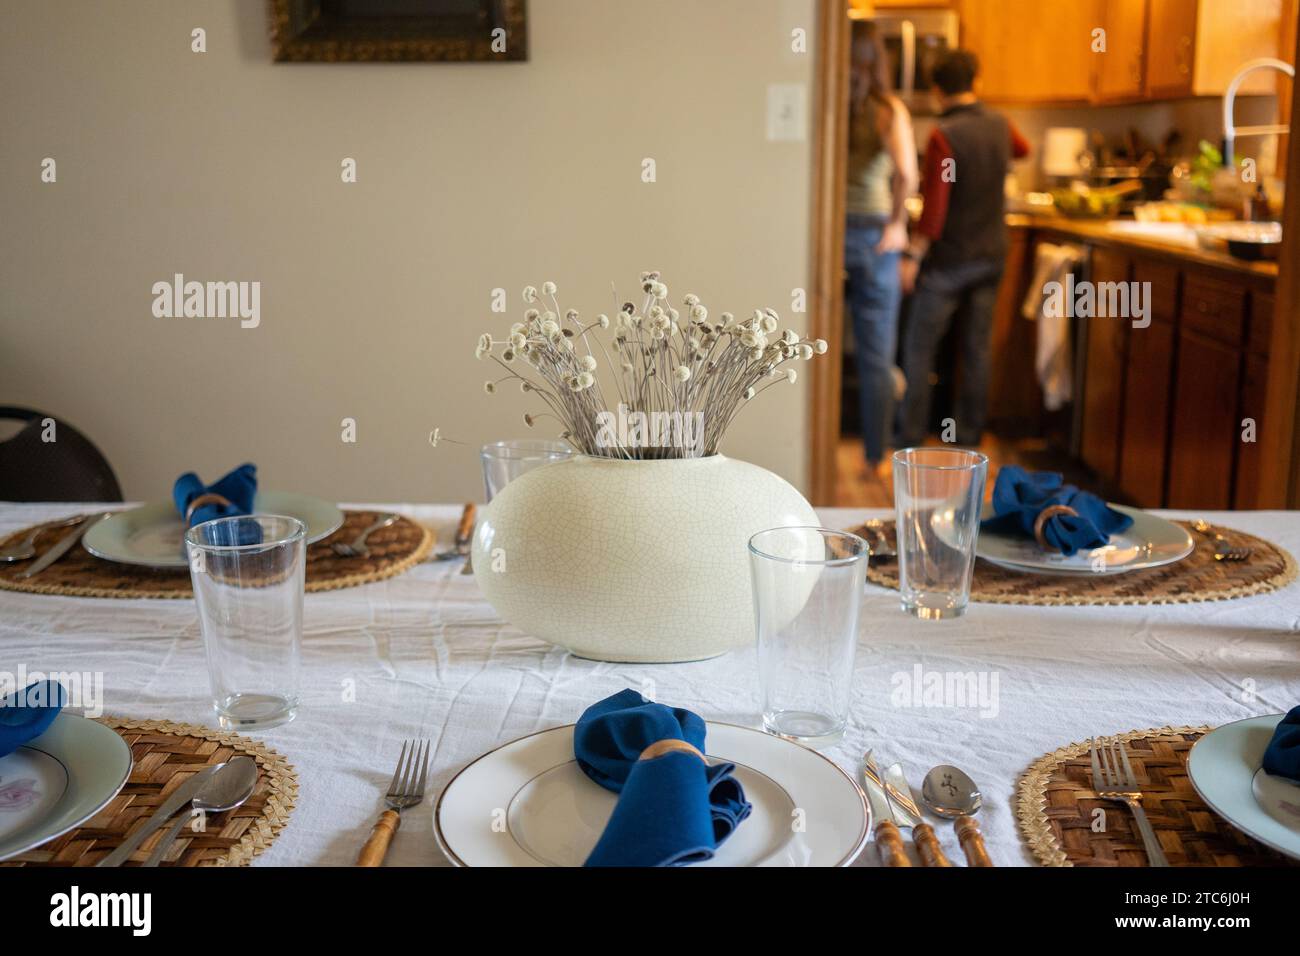 Festliche Tischdekoration in Blau und weiß mit einem getrockneten Blumenaufsatz Stockfoto